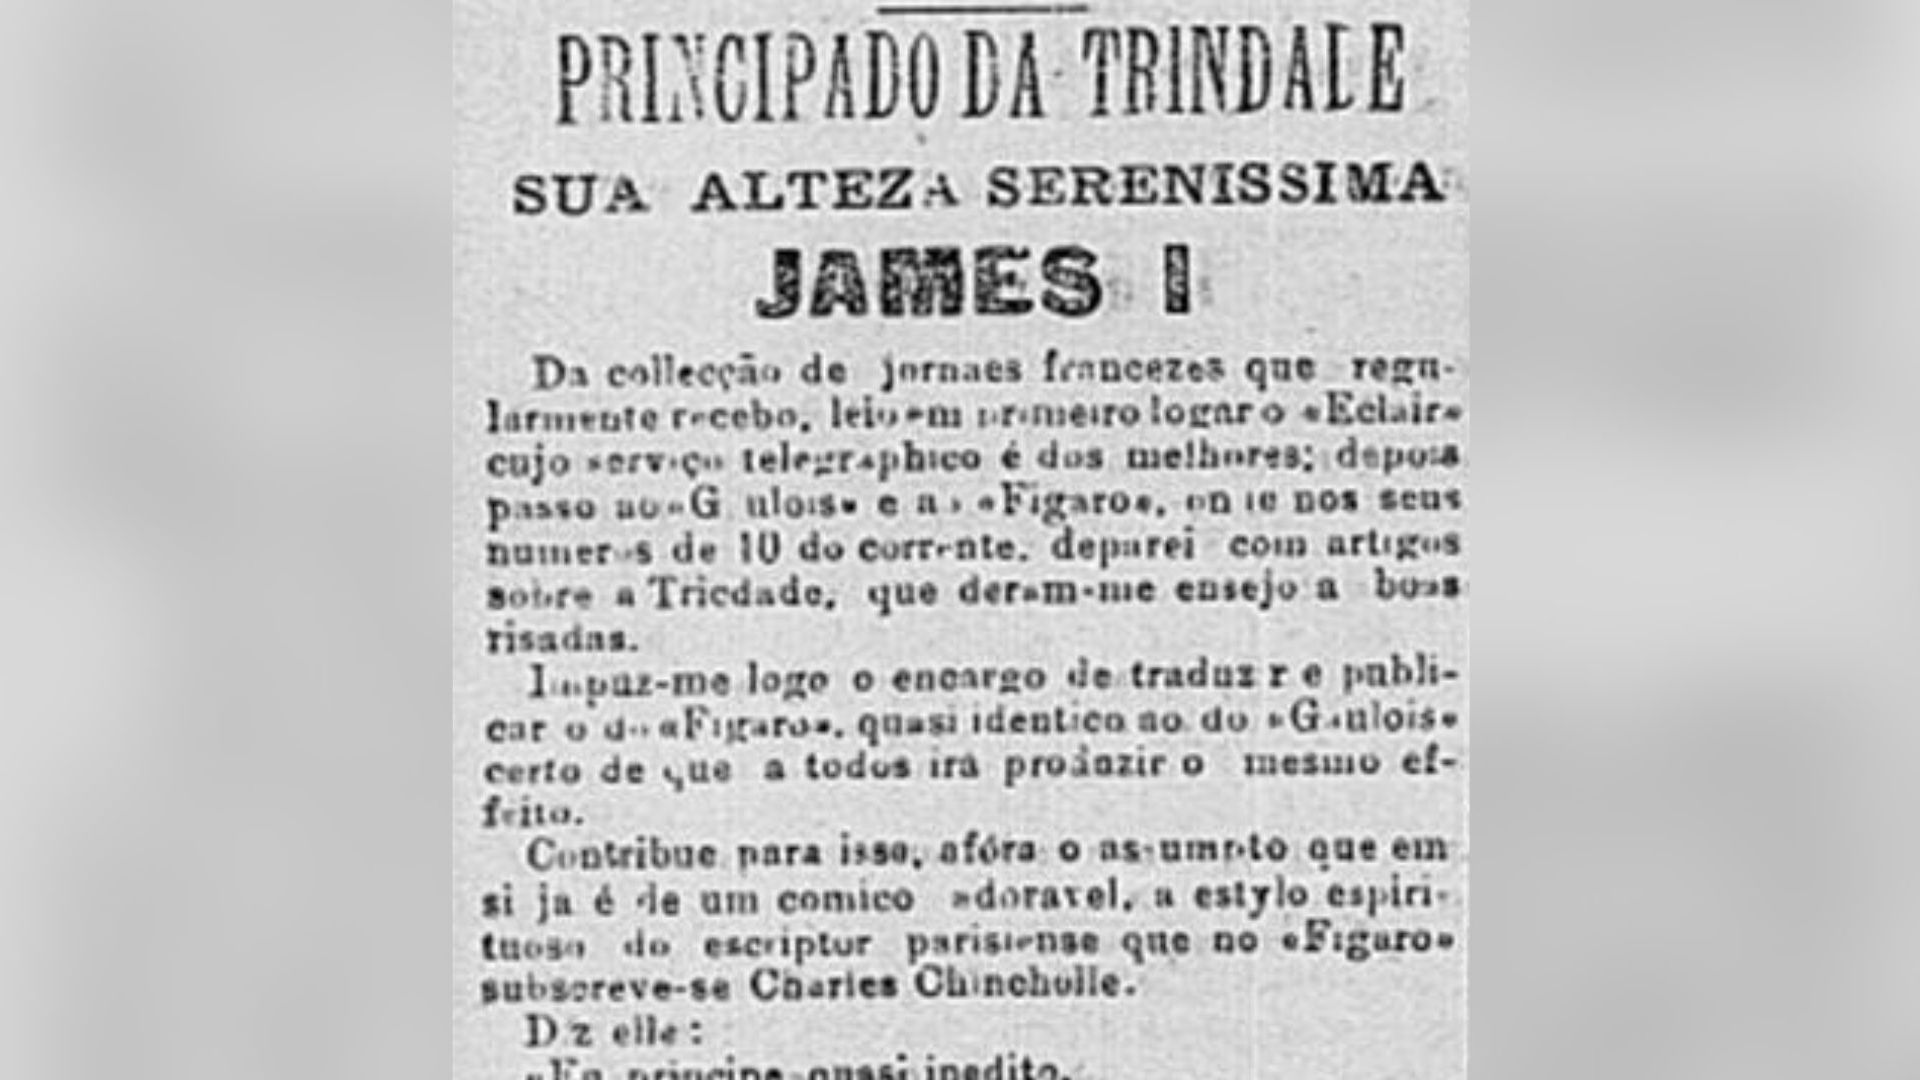 Principado foi citado no Jornal do Brasil, no Rio de Janeiro, em 1895